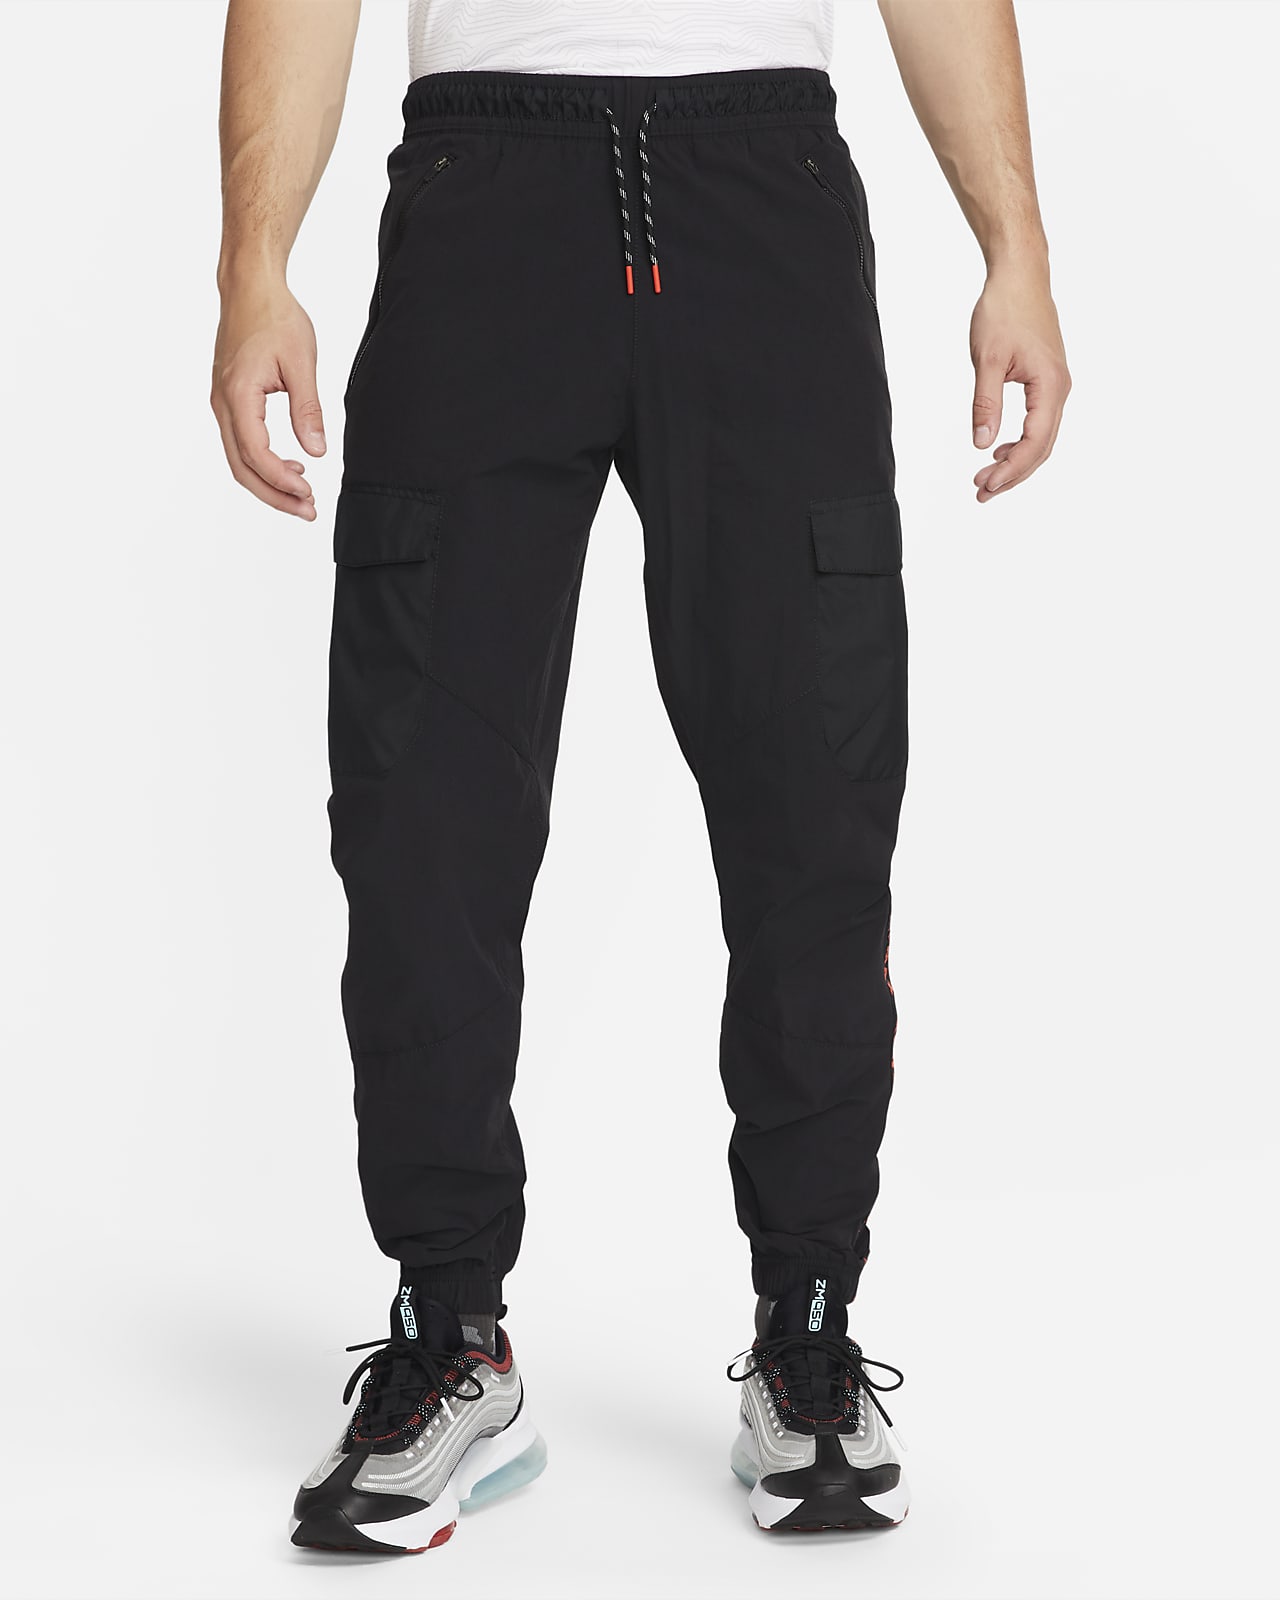 Ανδρικό υφαντό παντελόνι cargo Nike Sportswear Air Max